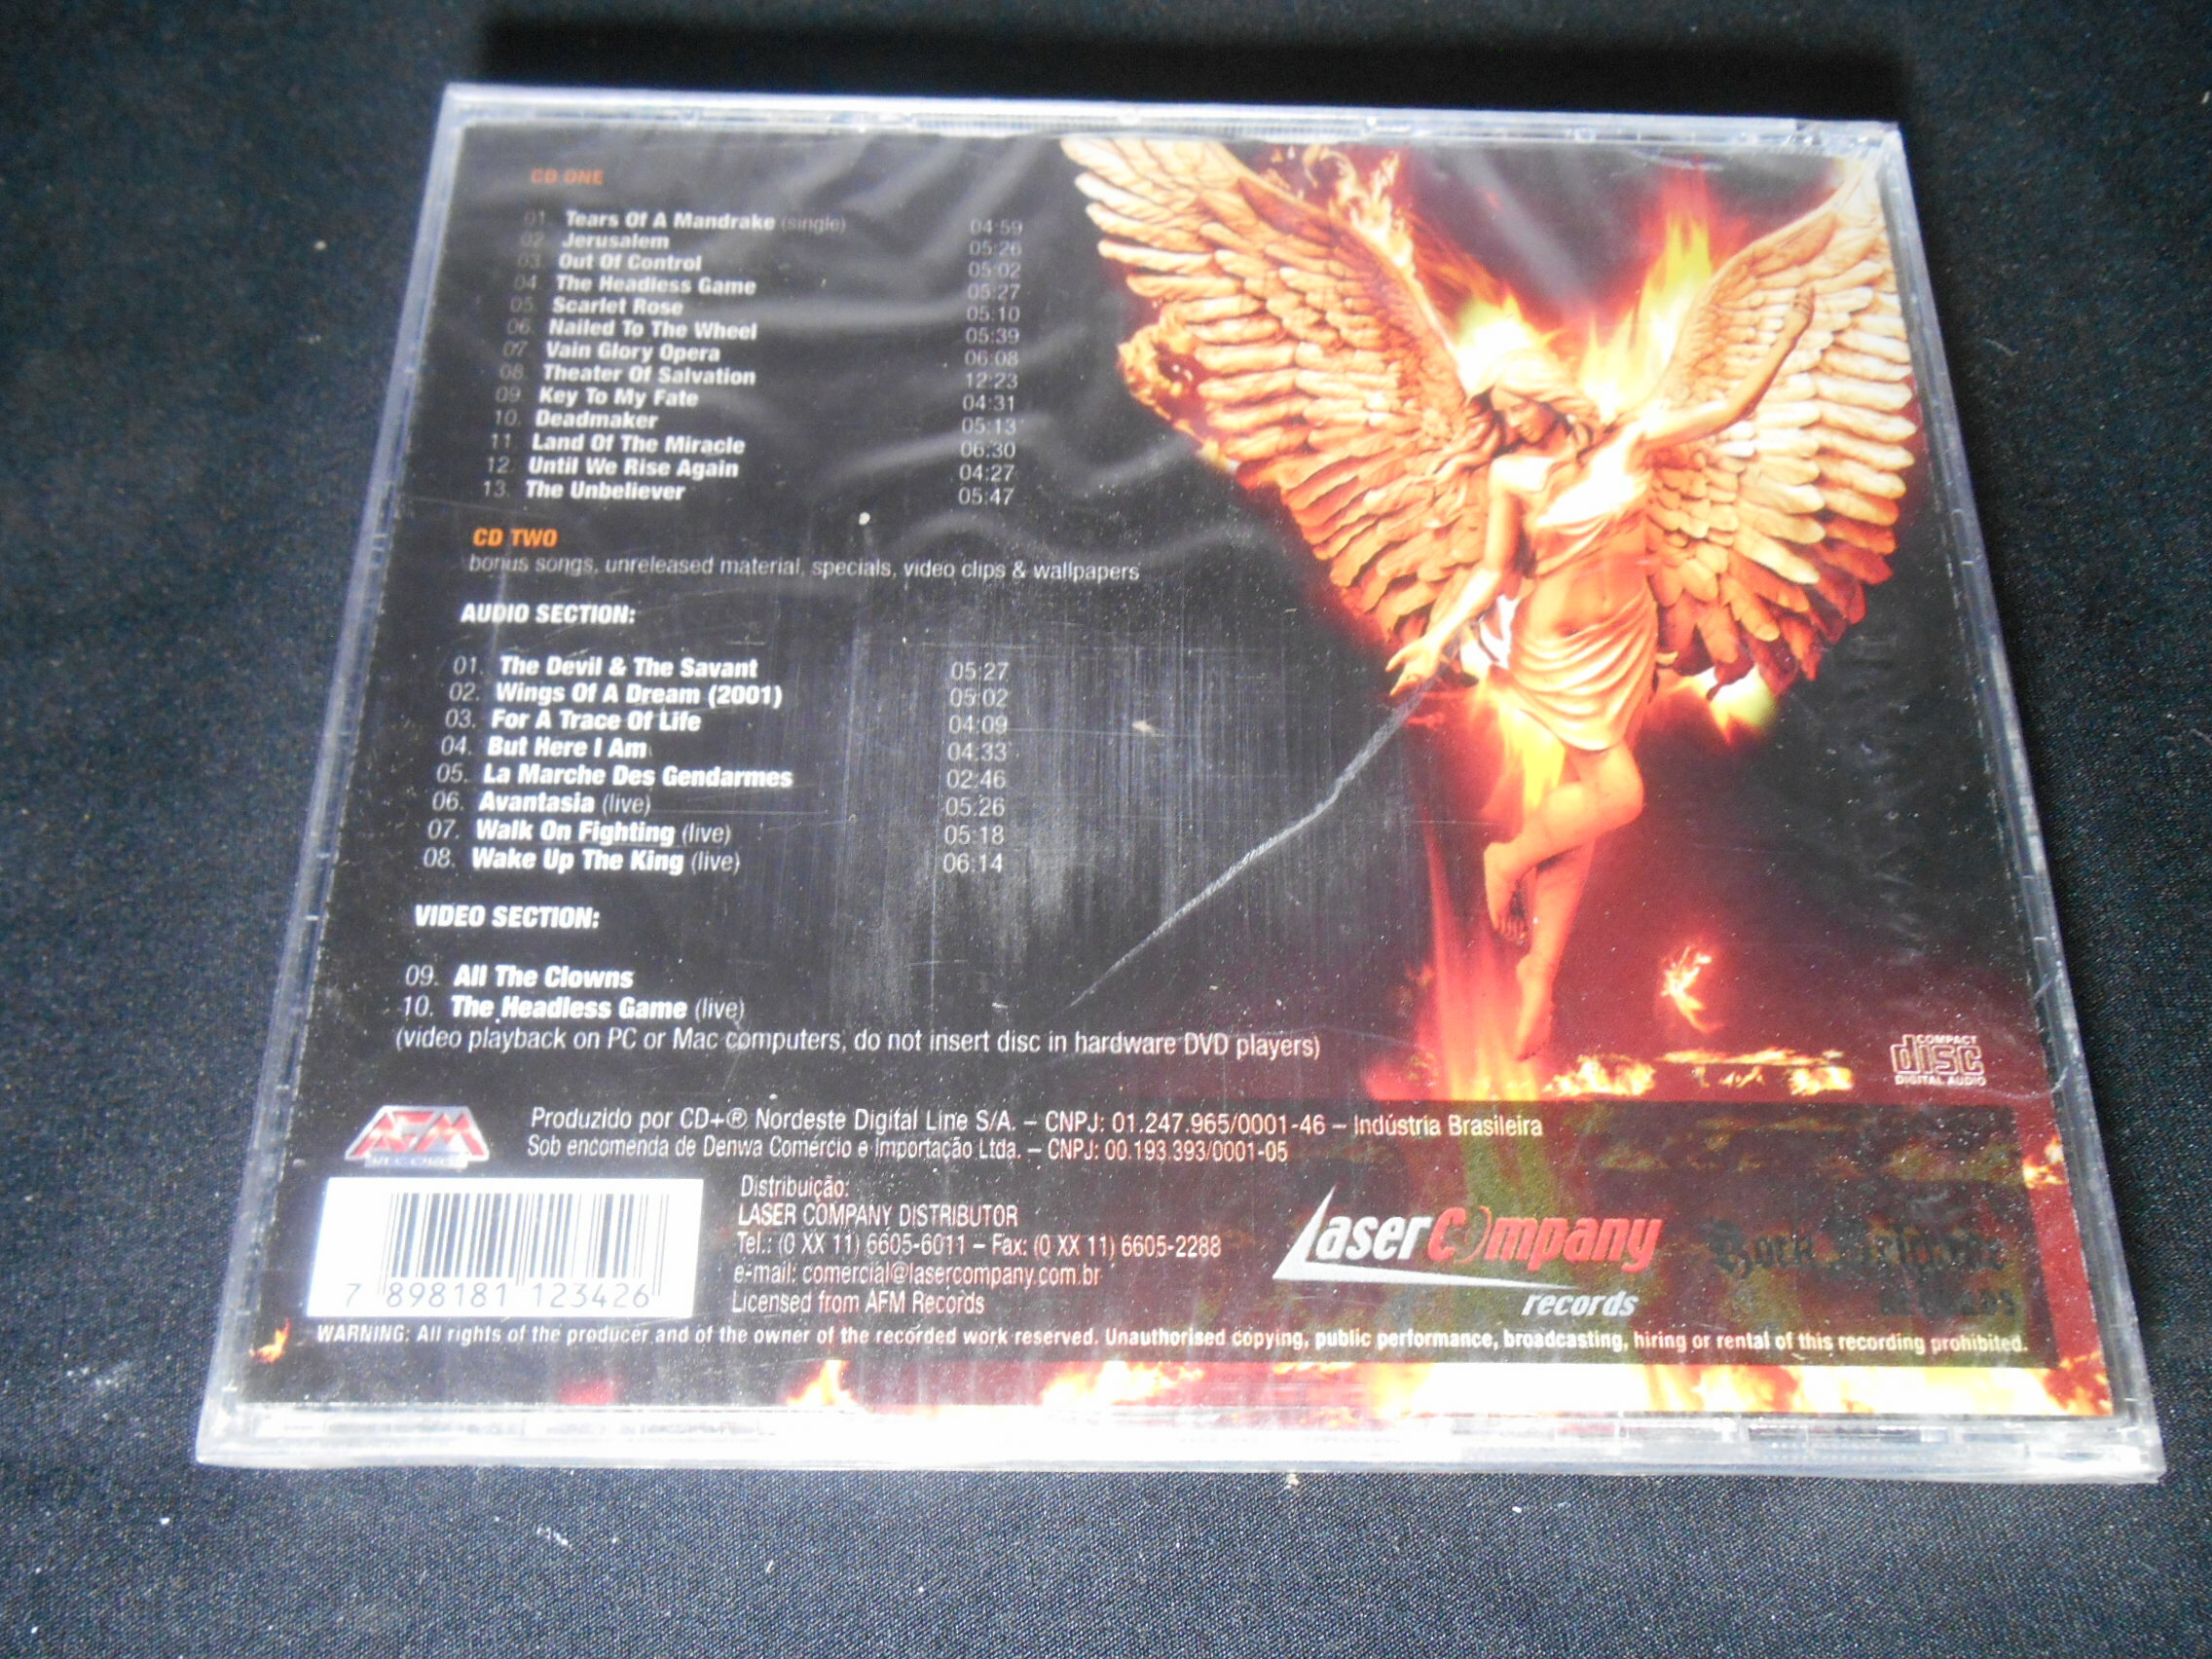 CD - Edguy - Hall Of Flame (Duplo/Lacrado)